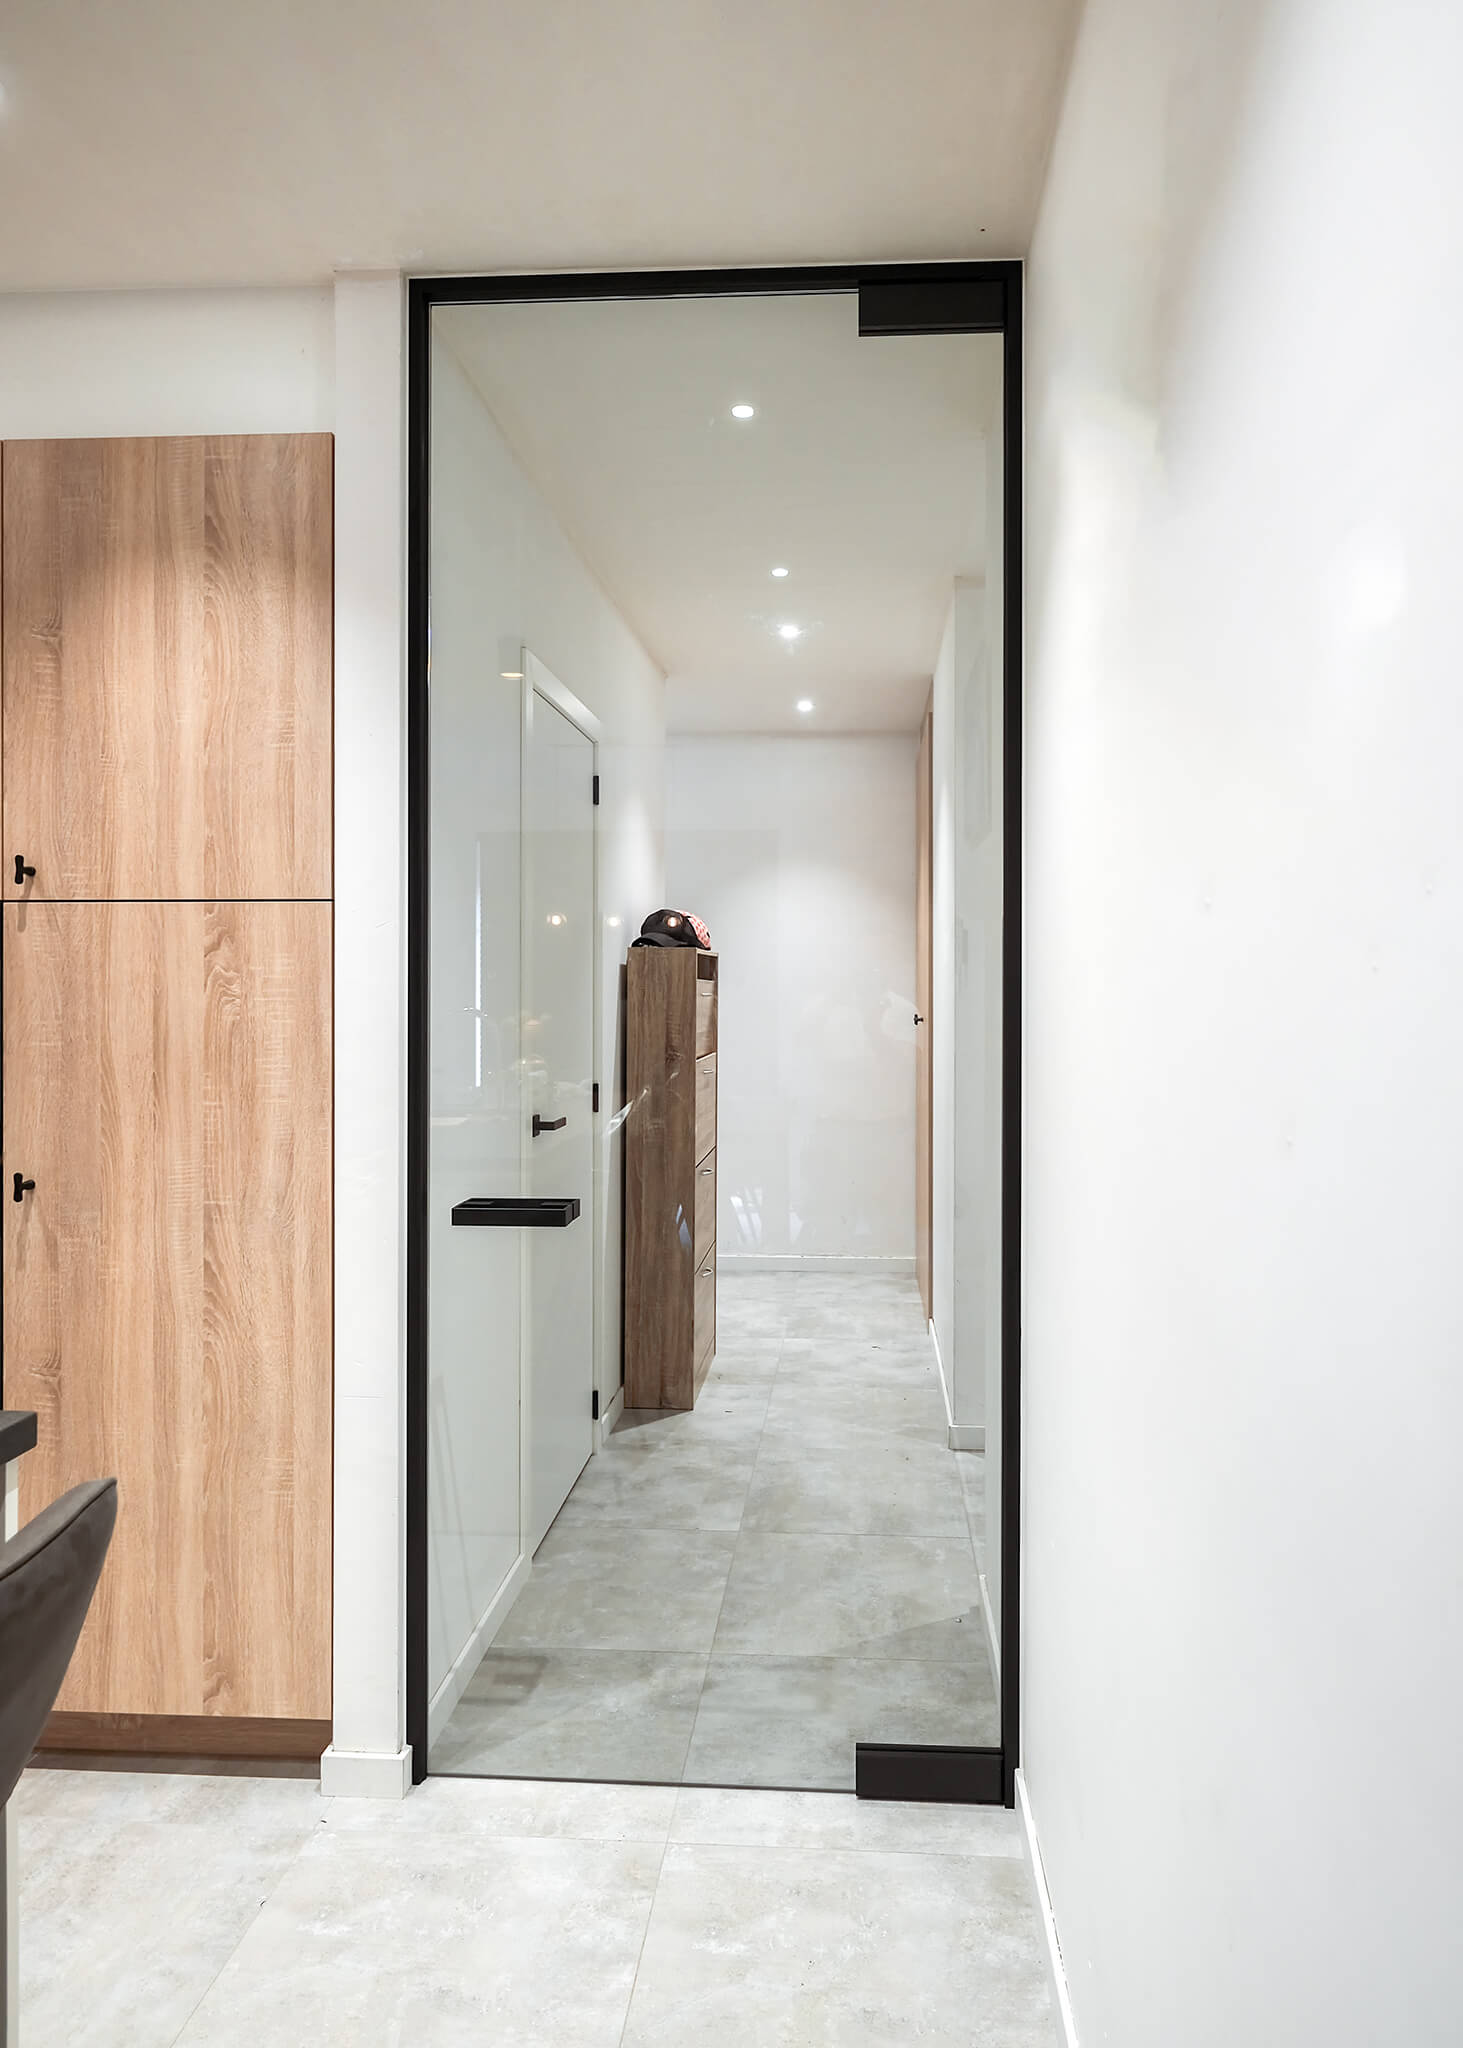 overschreden Evaluatie puree Kaderloze binnendeuren | The Doors Brugge | Xinnix-binnendeuren |  Binnendeuren zonder omlijsting